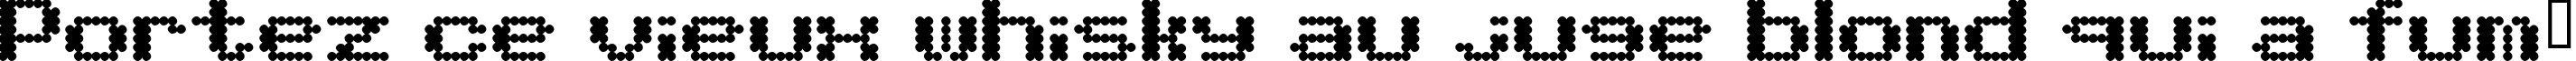 Пример написания шрифтом BubbleBath текста на французском